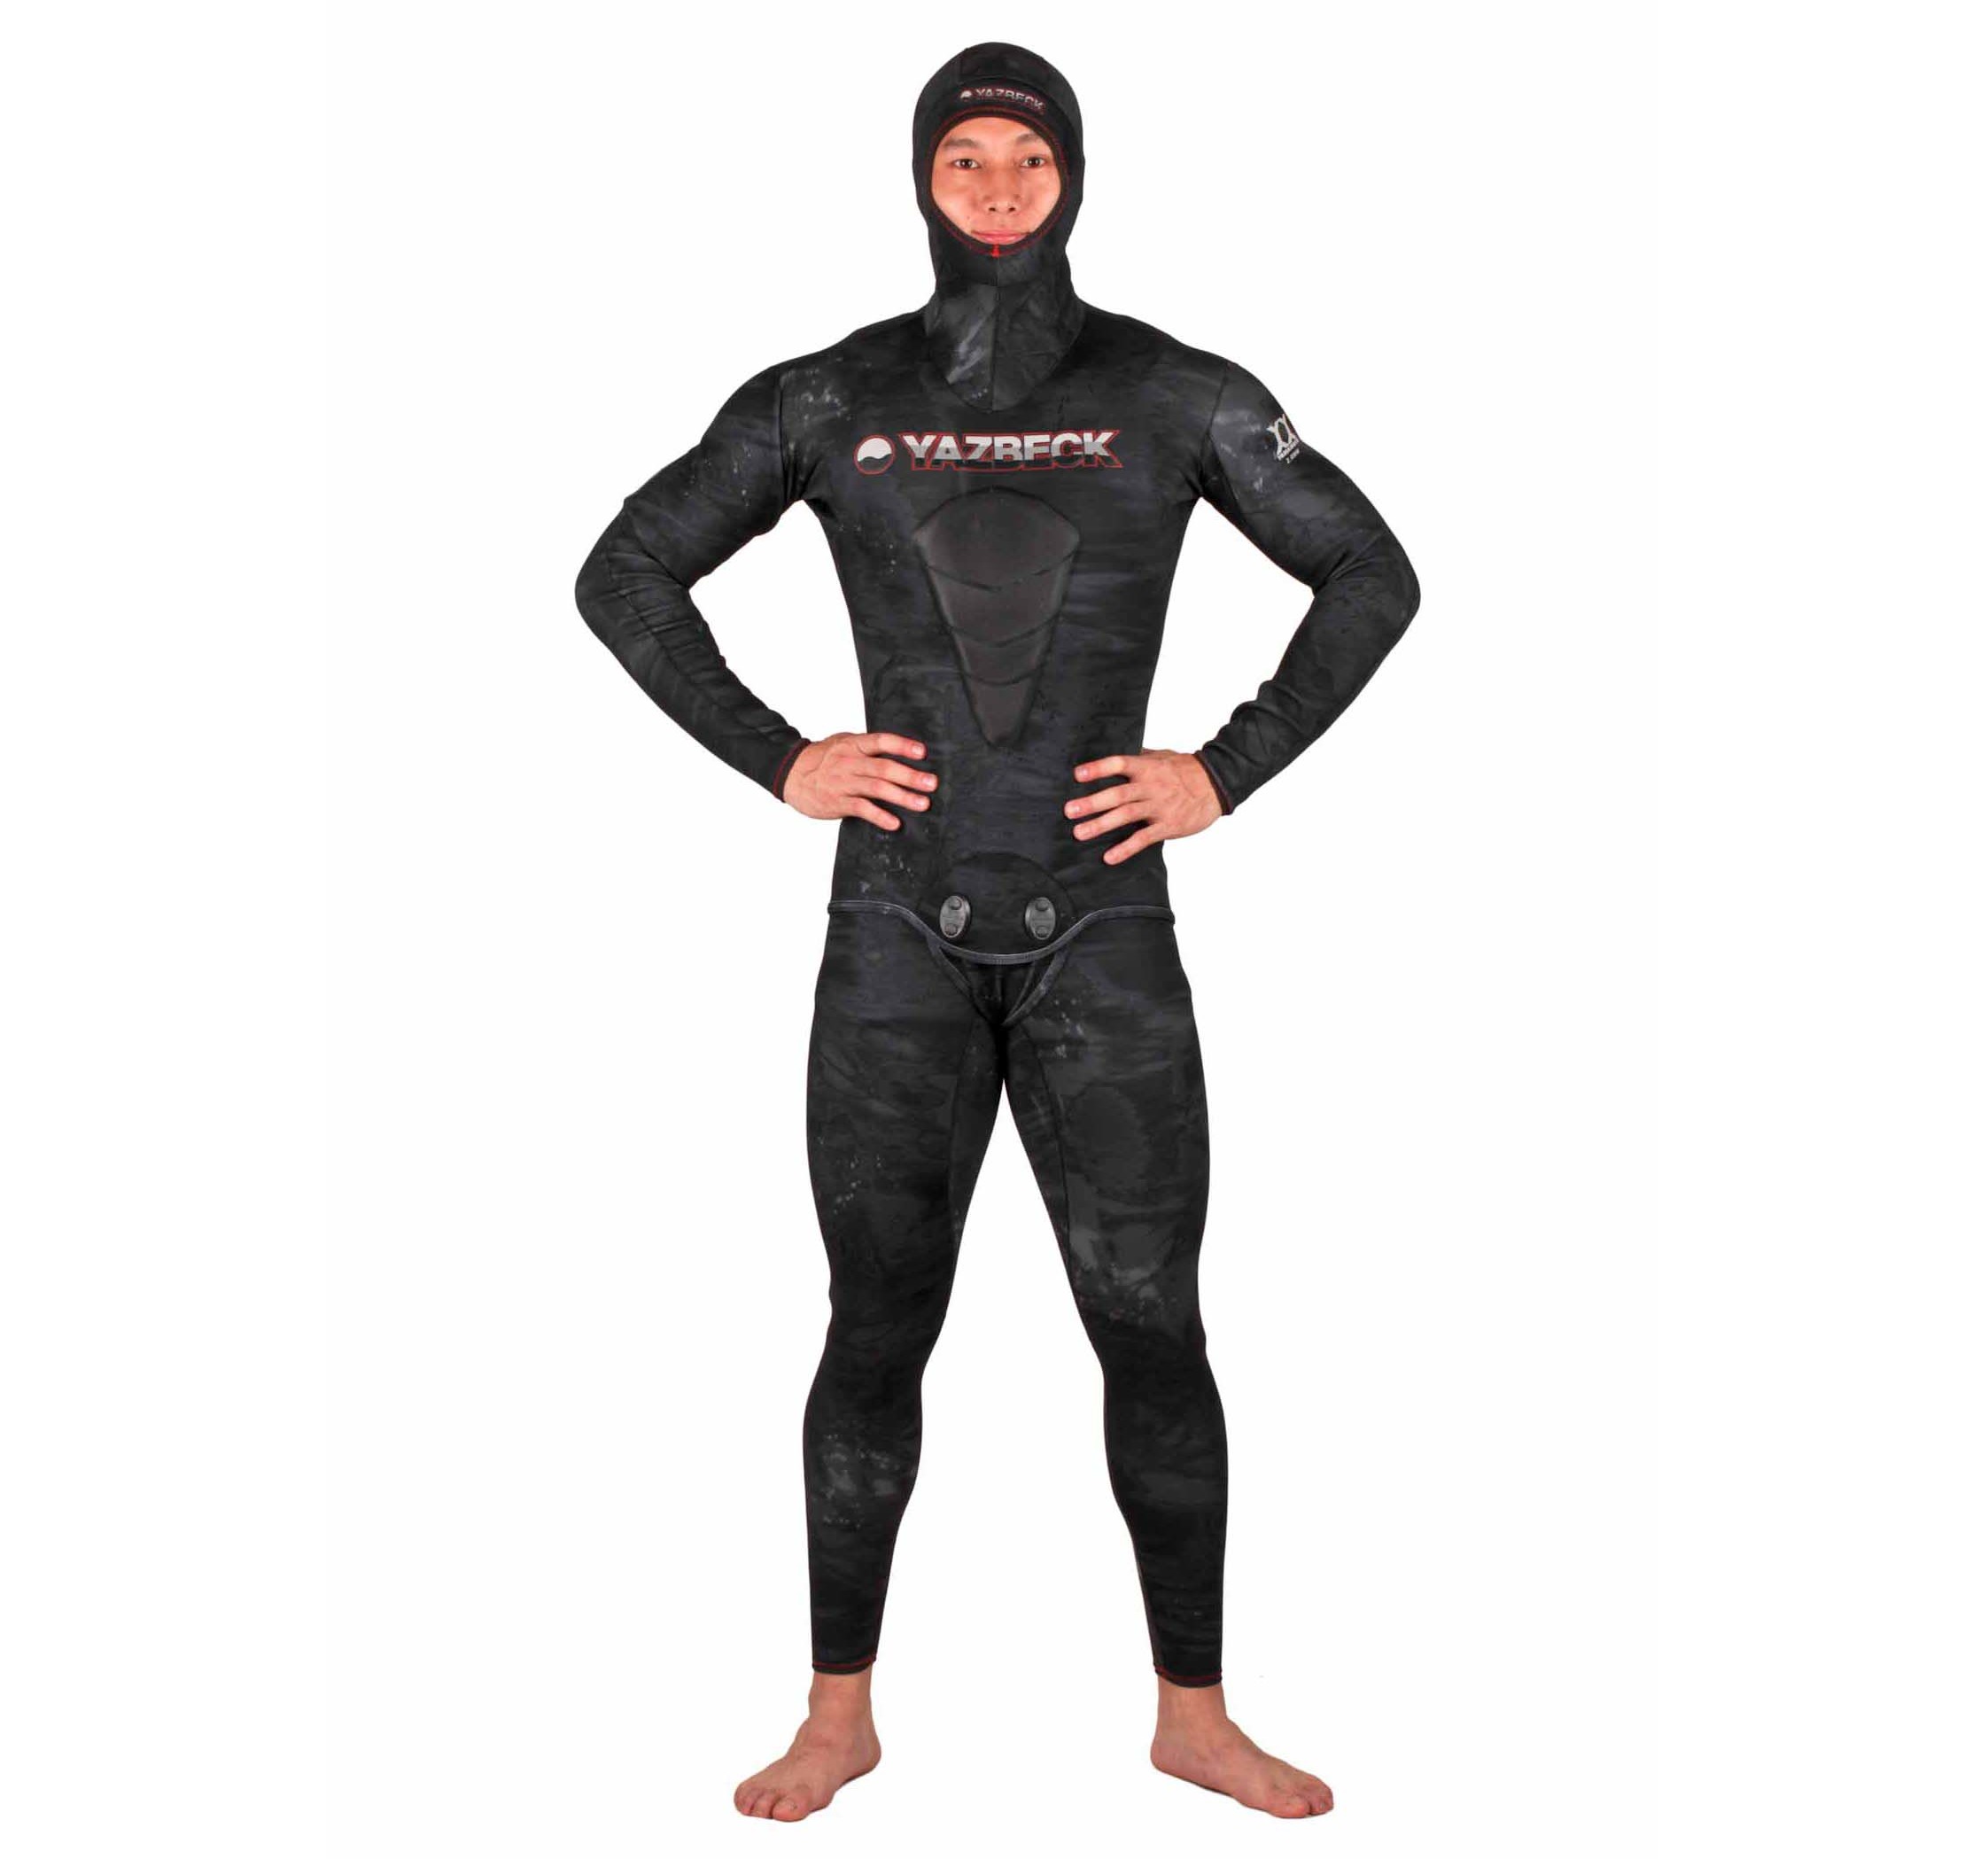 Carbone-wetsuit-4-van-8-e1441164326374.jpg